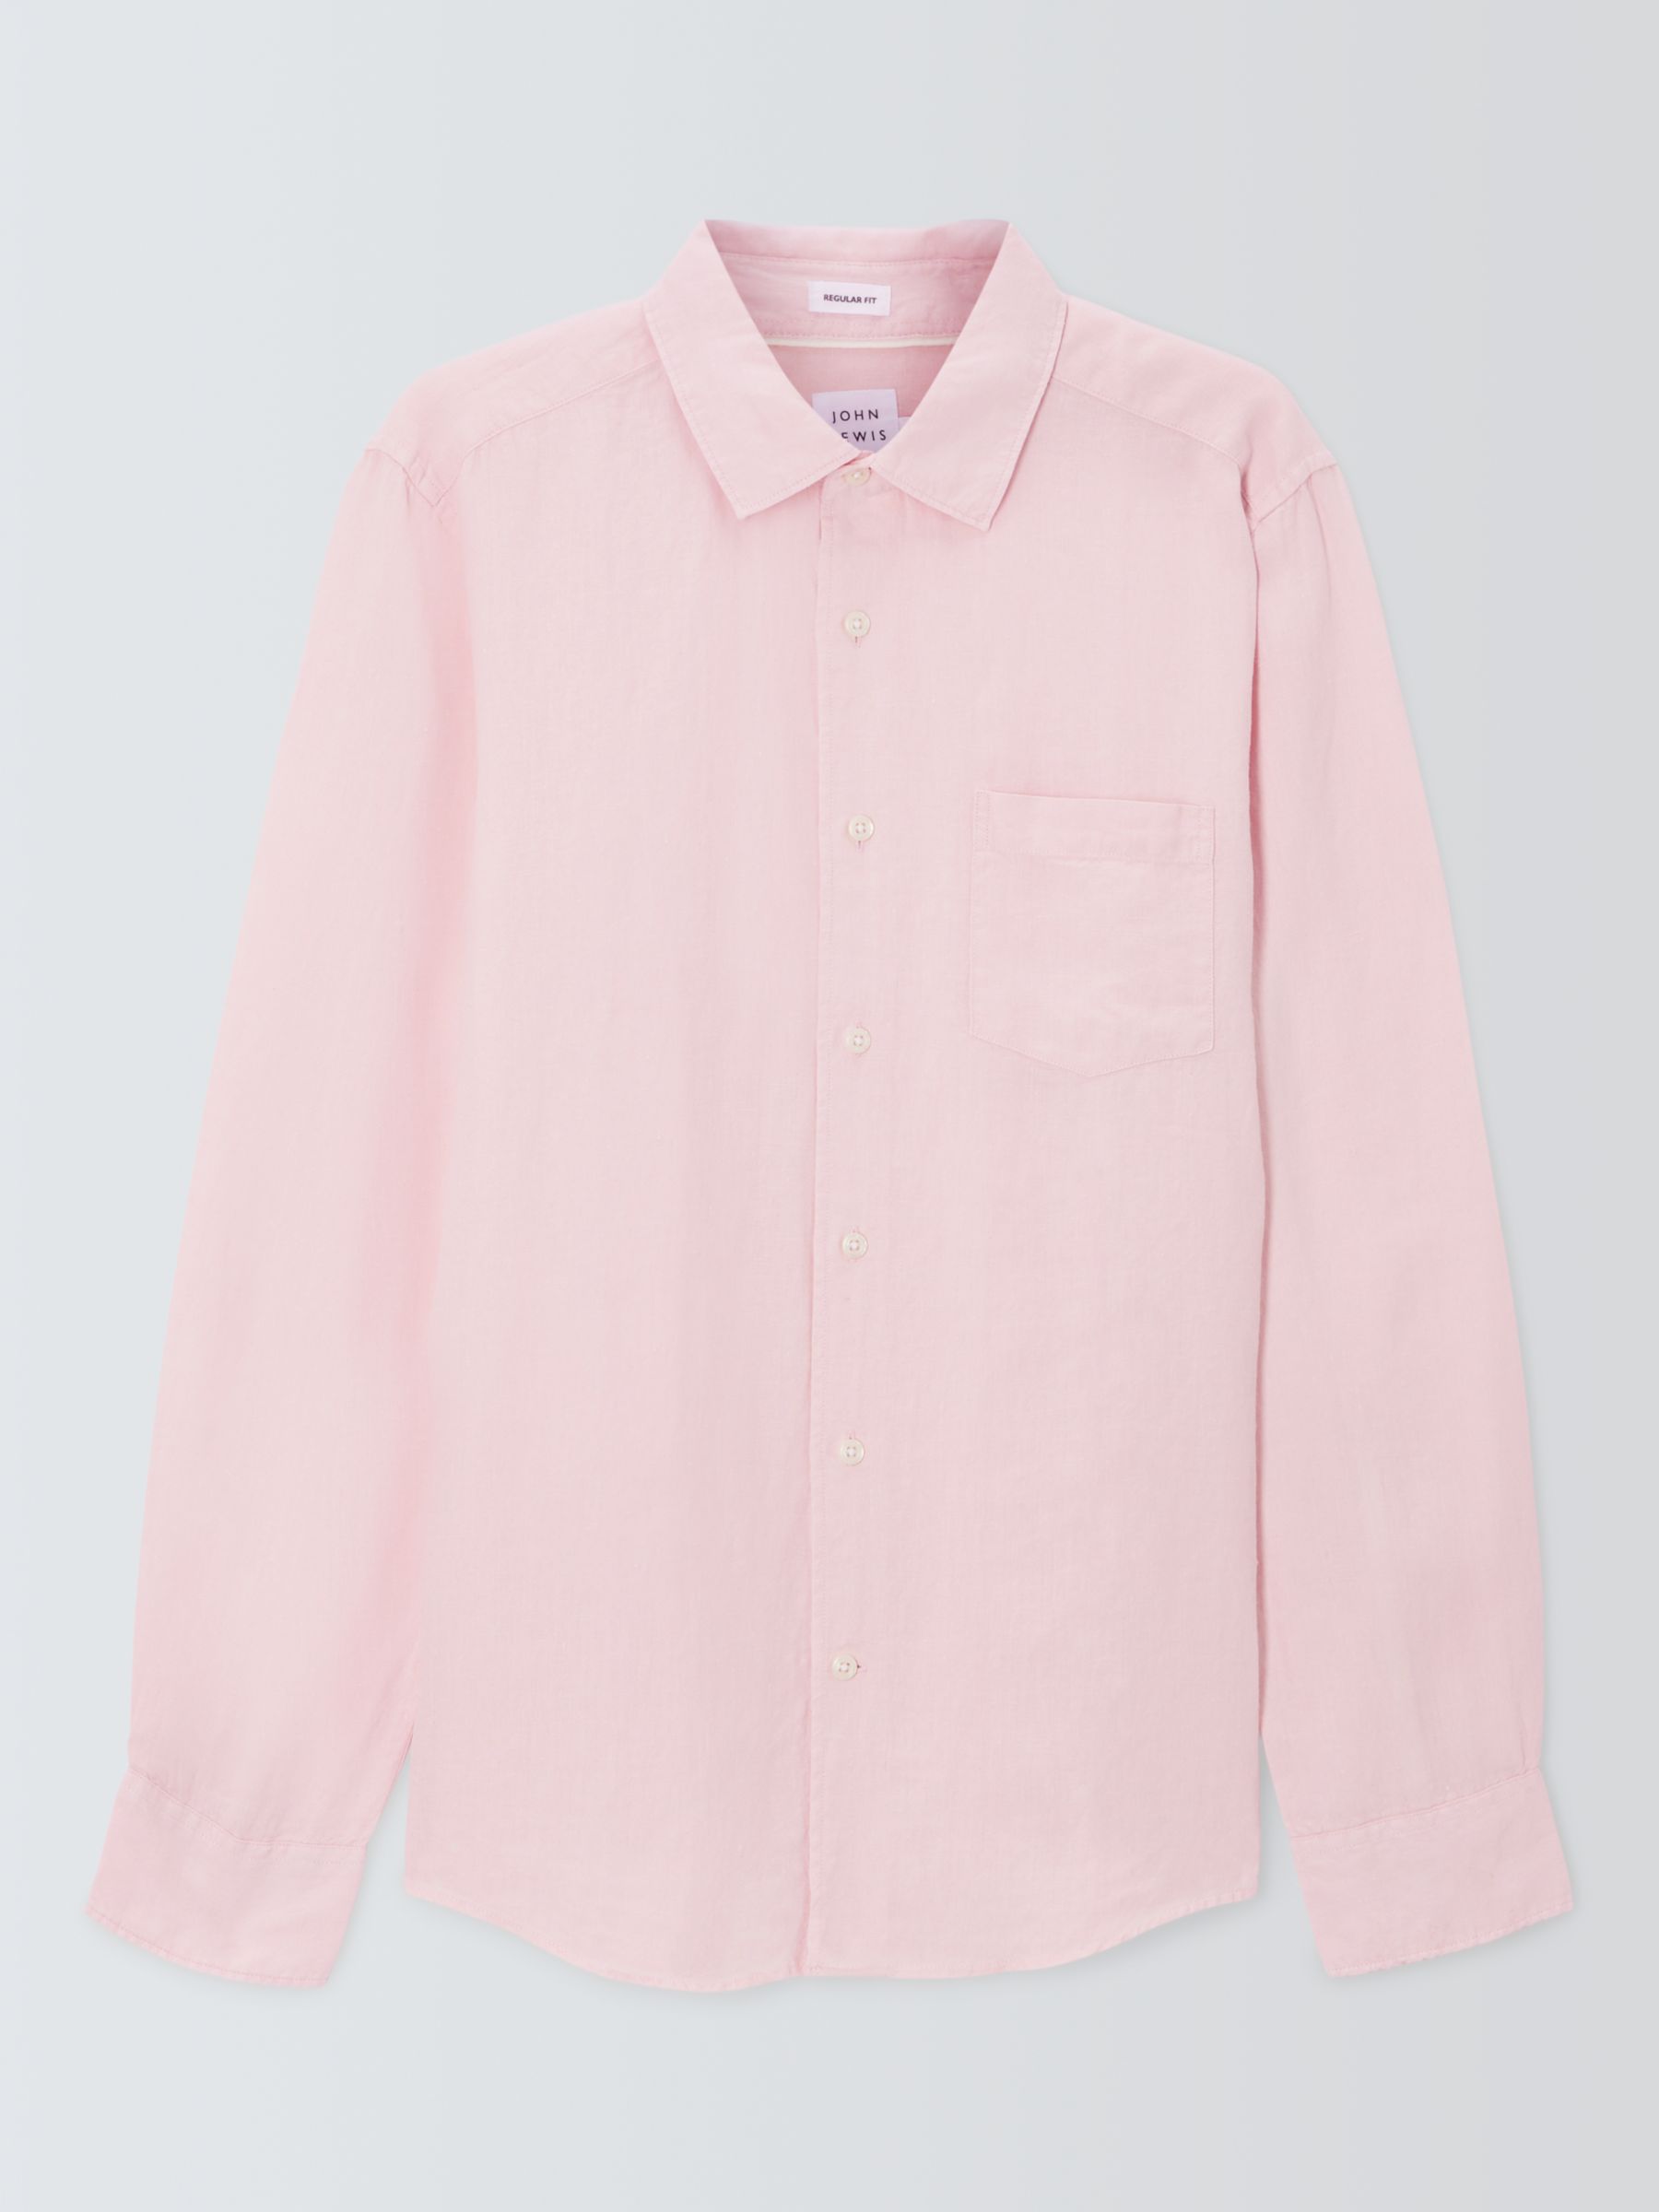 John Lewis Linen Long Sleeve Shirt, Pink, S